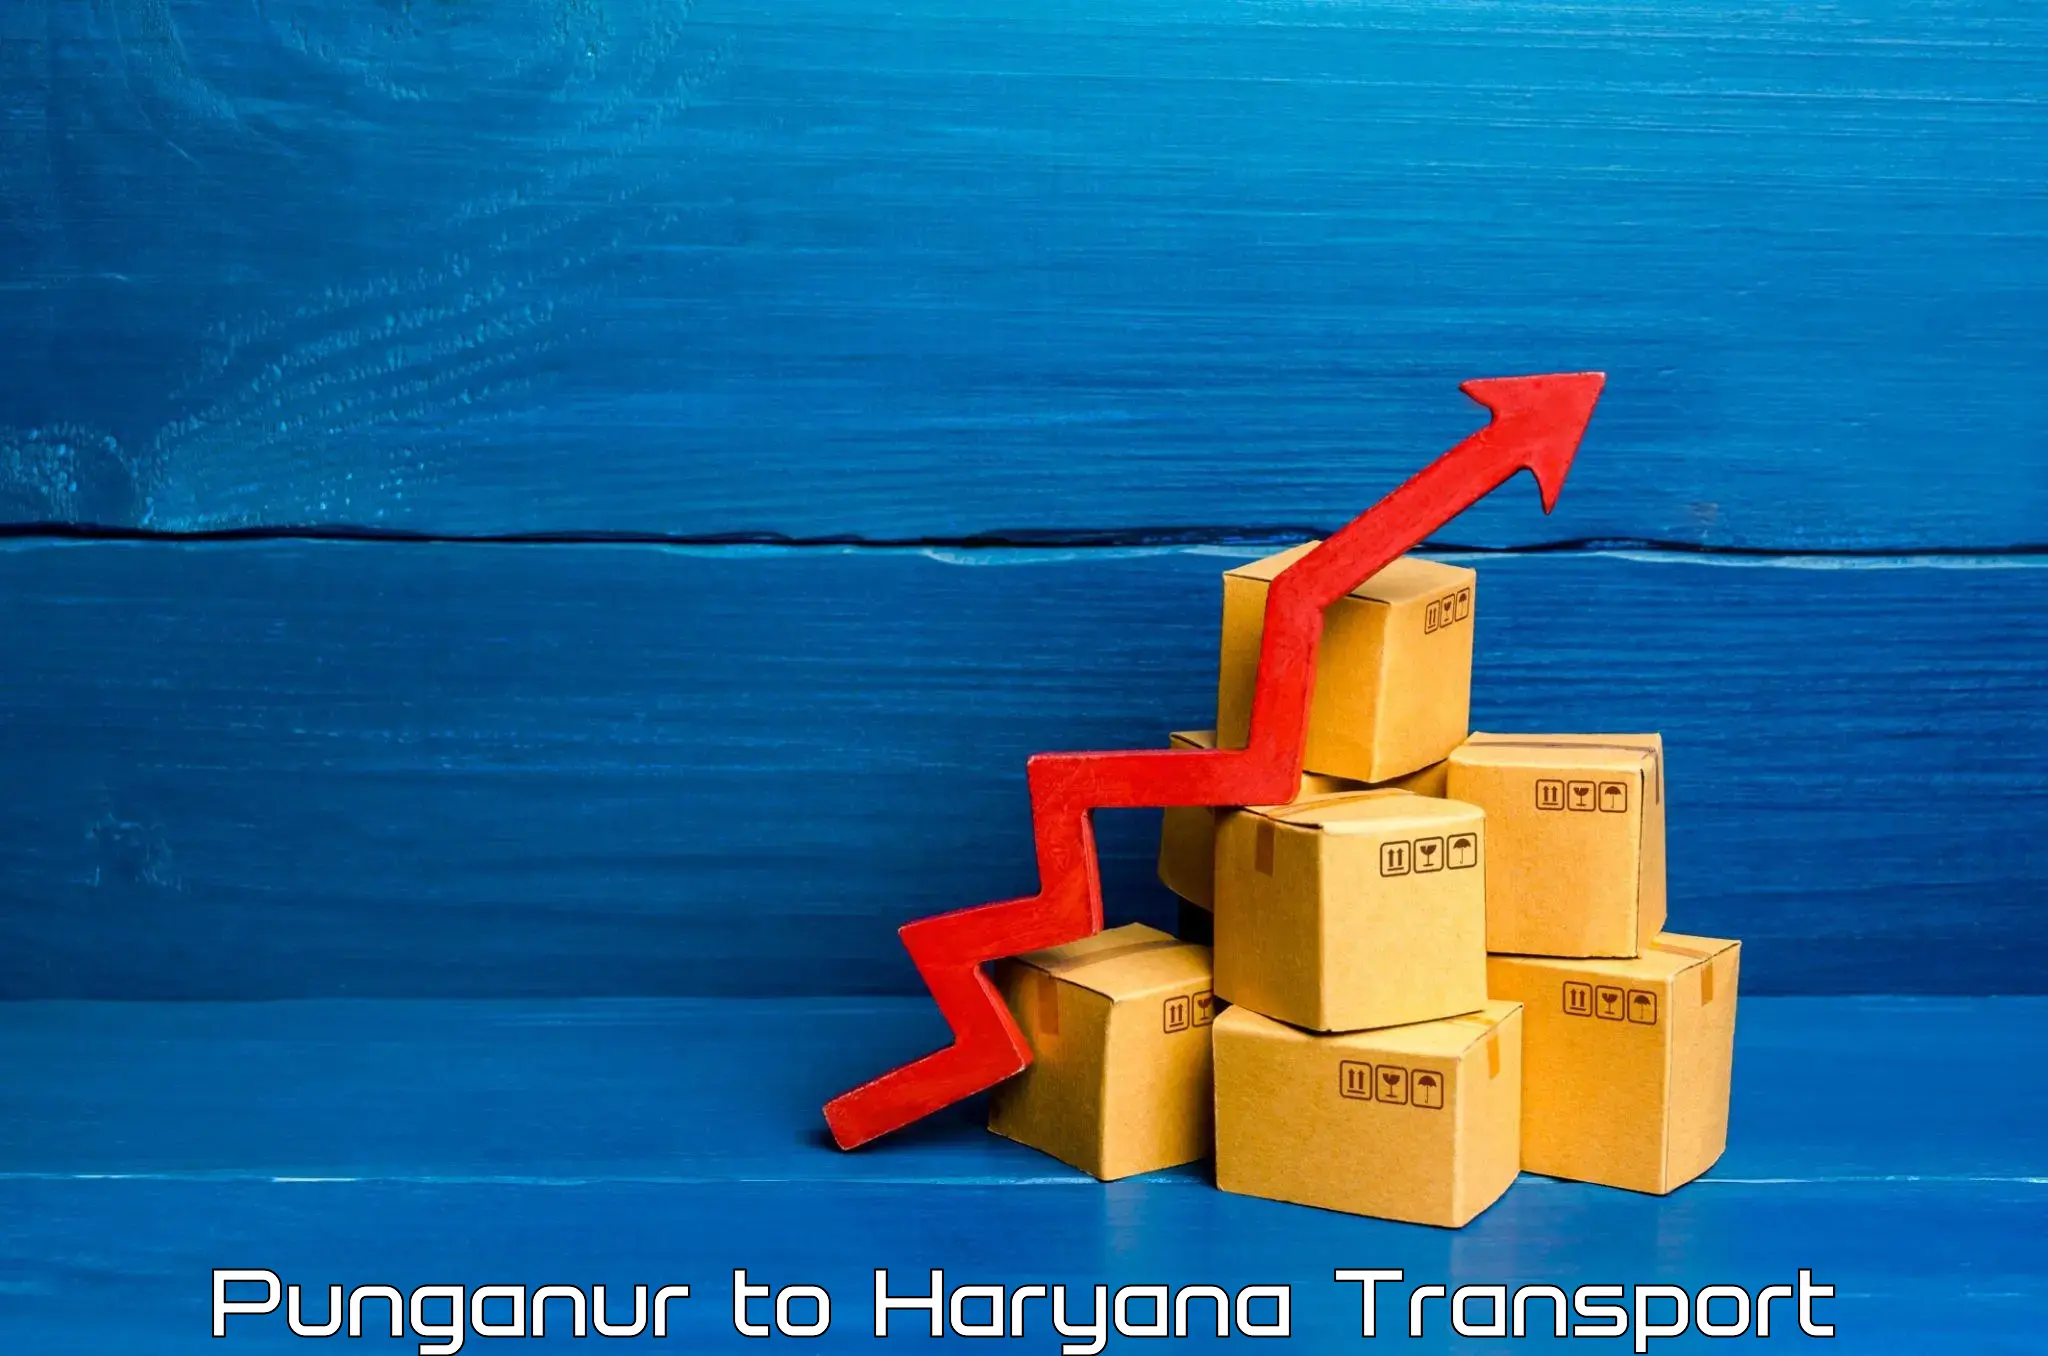 Two wheeler parcel service Punganur to Gurgaon